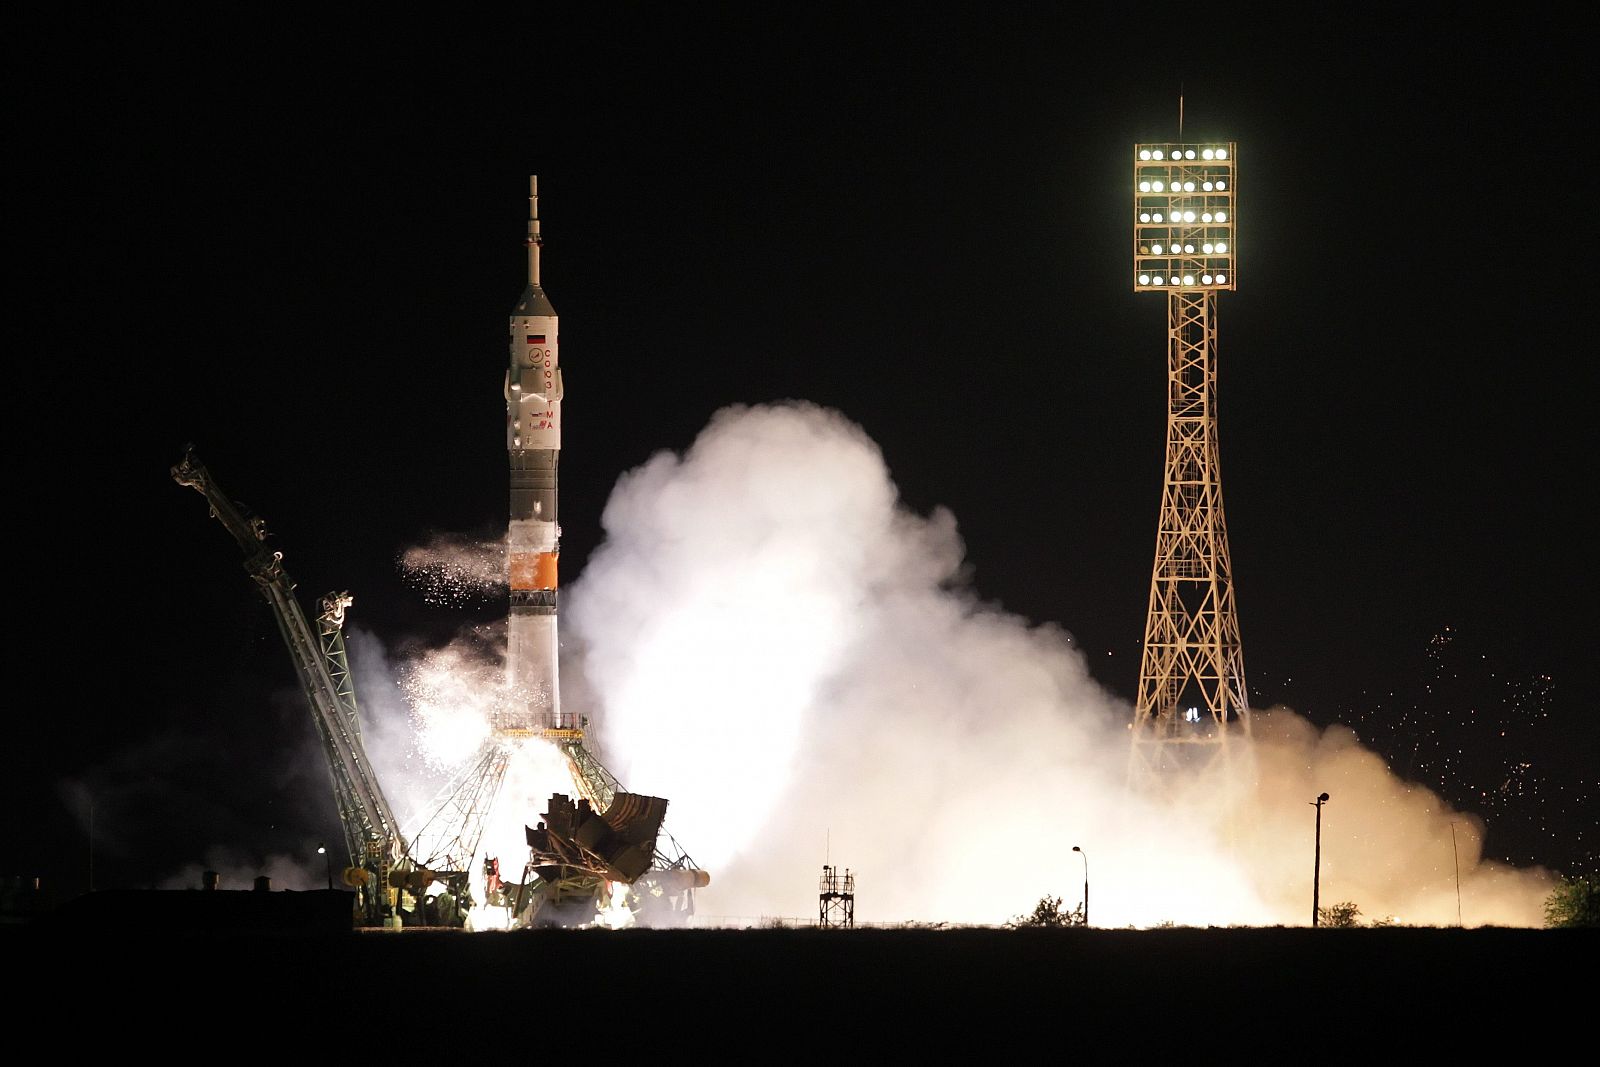 La nave espacial rusa Soyuz TMA-19 antes de despegar del cosmódromo de Baikonur